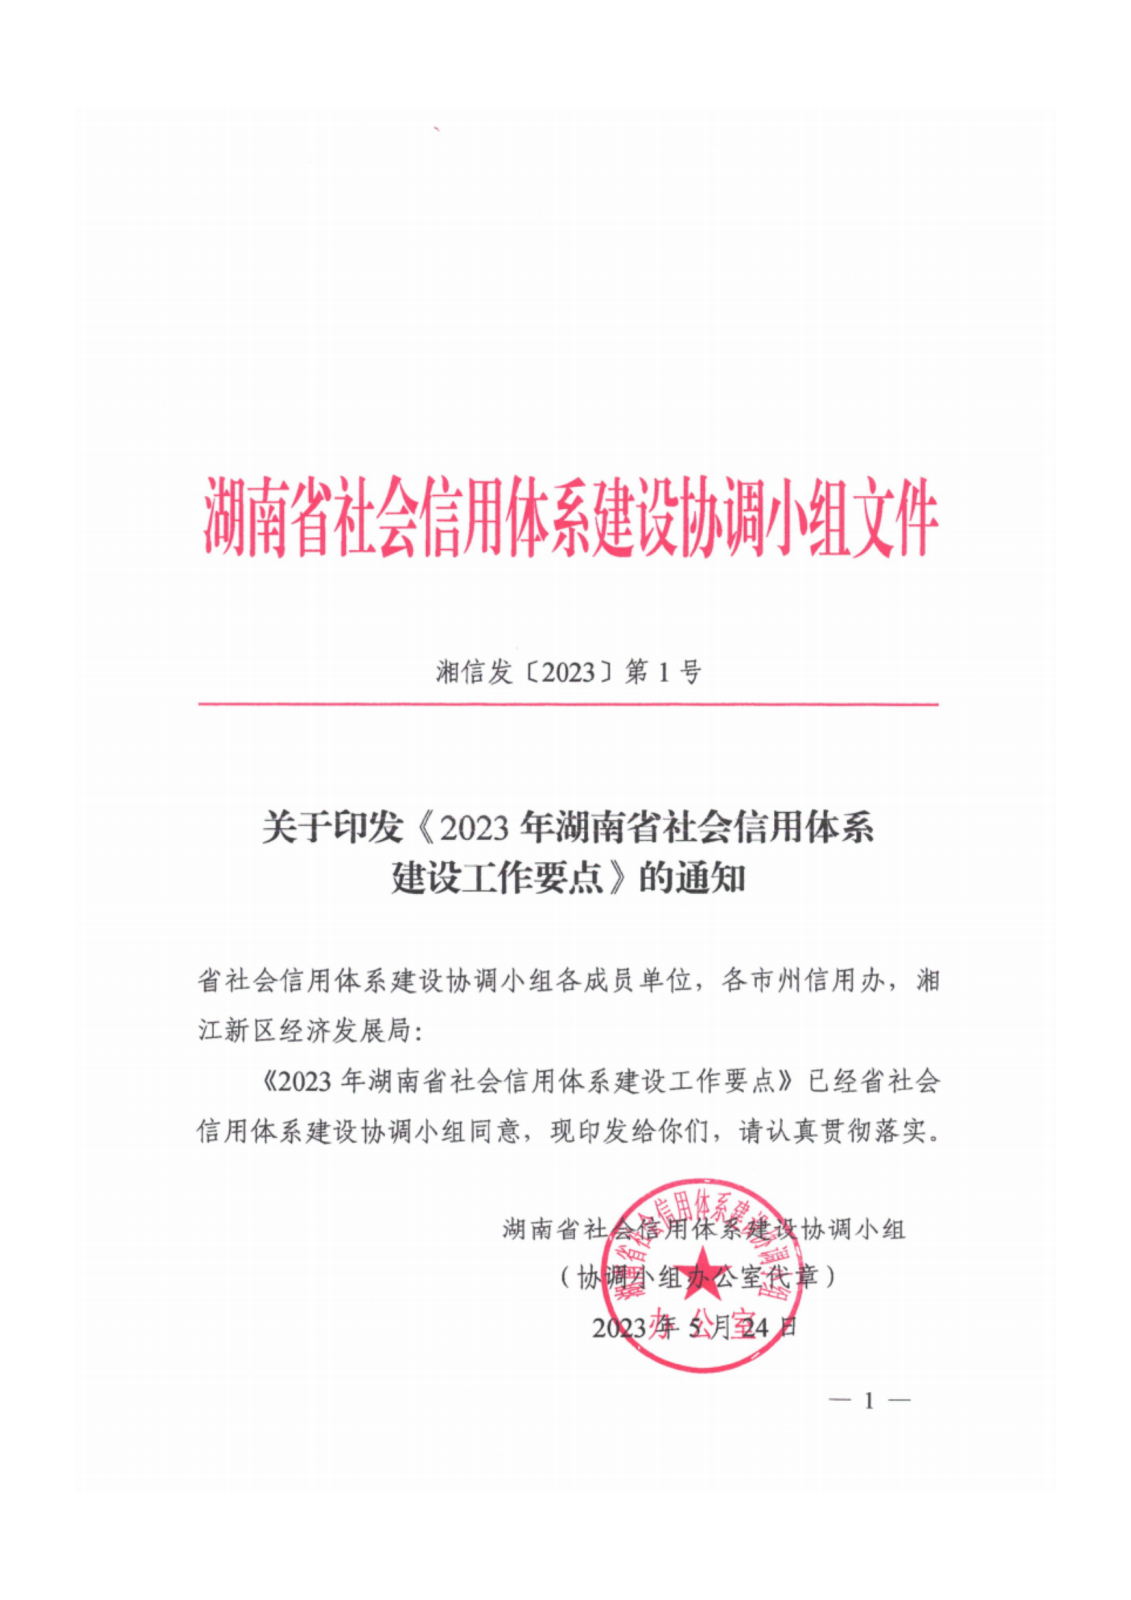 2023年湖南省社会信用体系建设工作要点_00.png